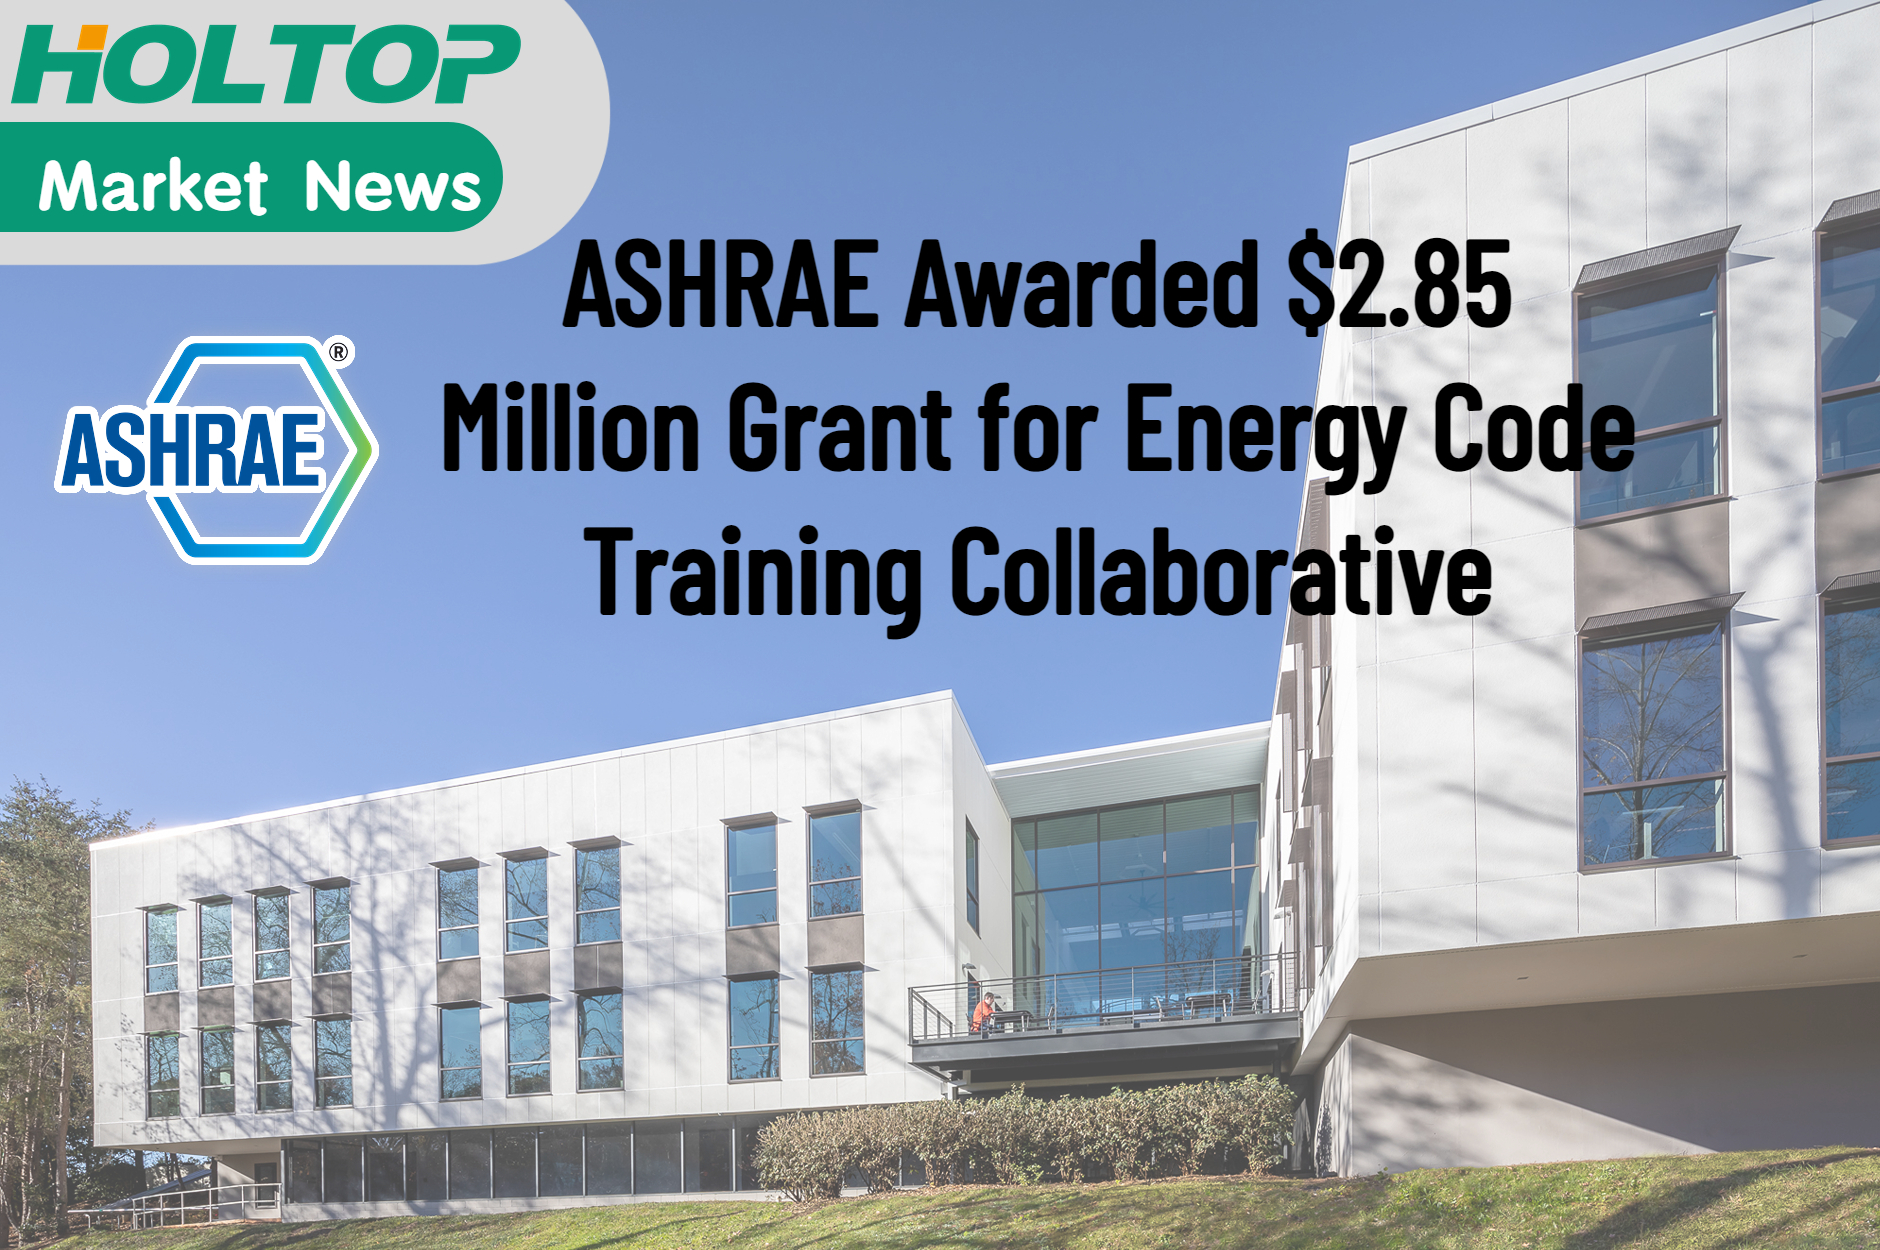 ASHRAE erhält einen Zuschuss in Höhe von 2,85 Millionen US-Dollar für die Kooperation zur Schulung von Energievorschriften